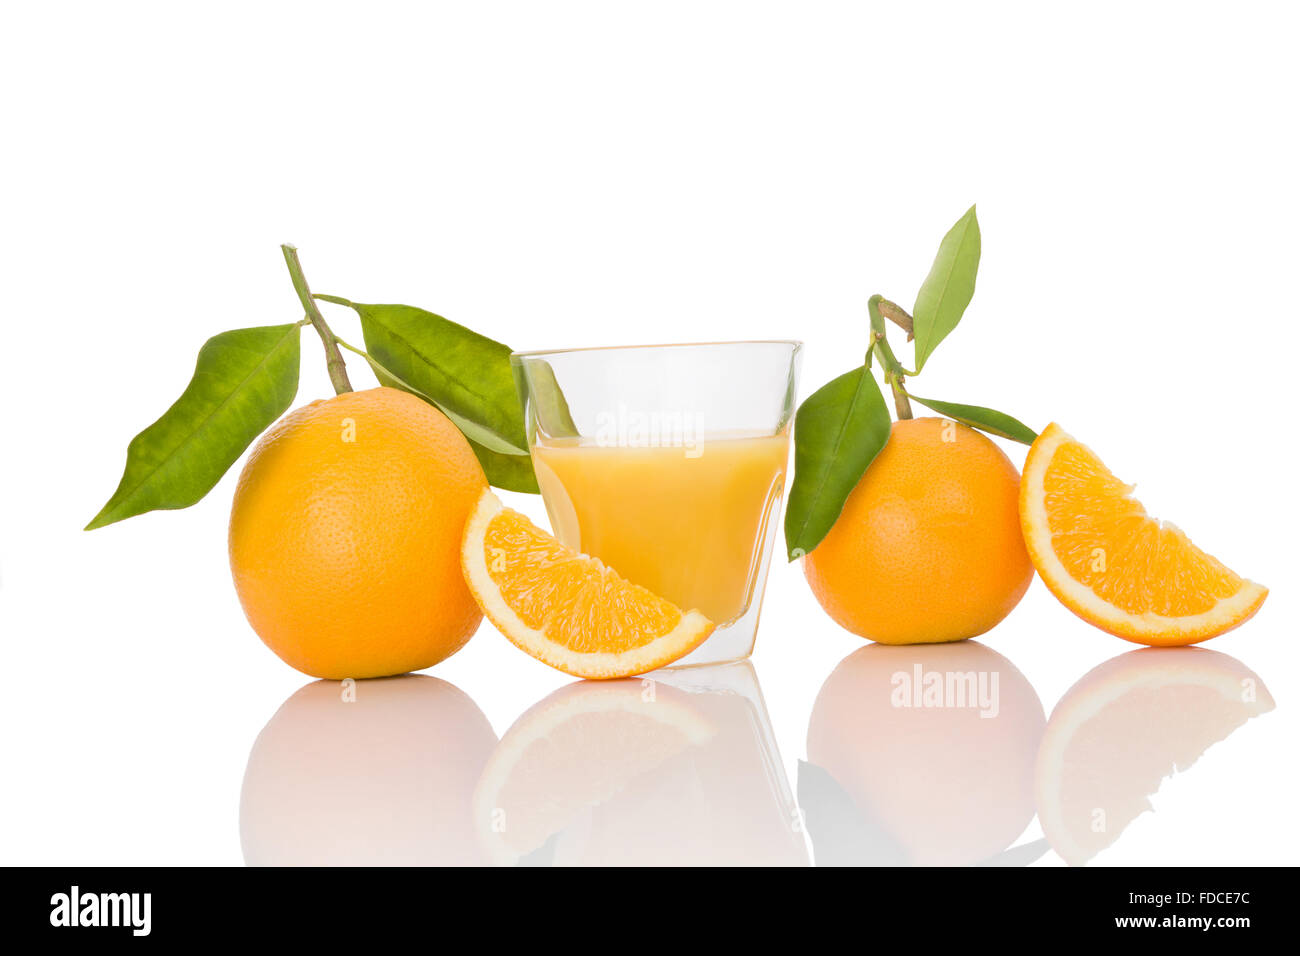 Tutto delizioso arance con foglie e fette isolati su sfondo bianco. La frutta sana mangiare. Foto Stock